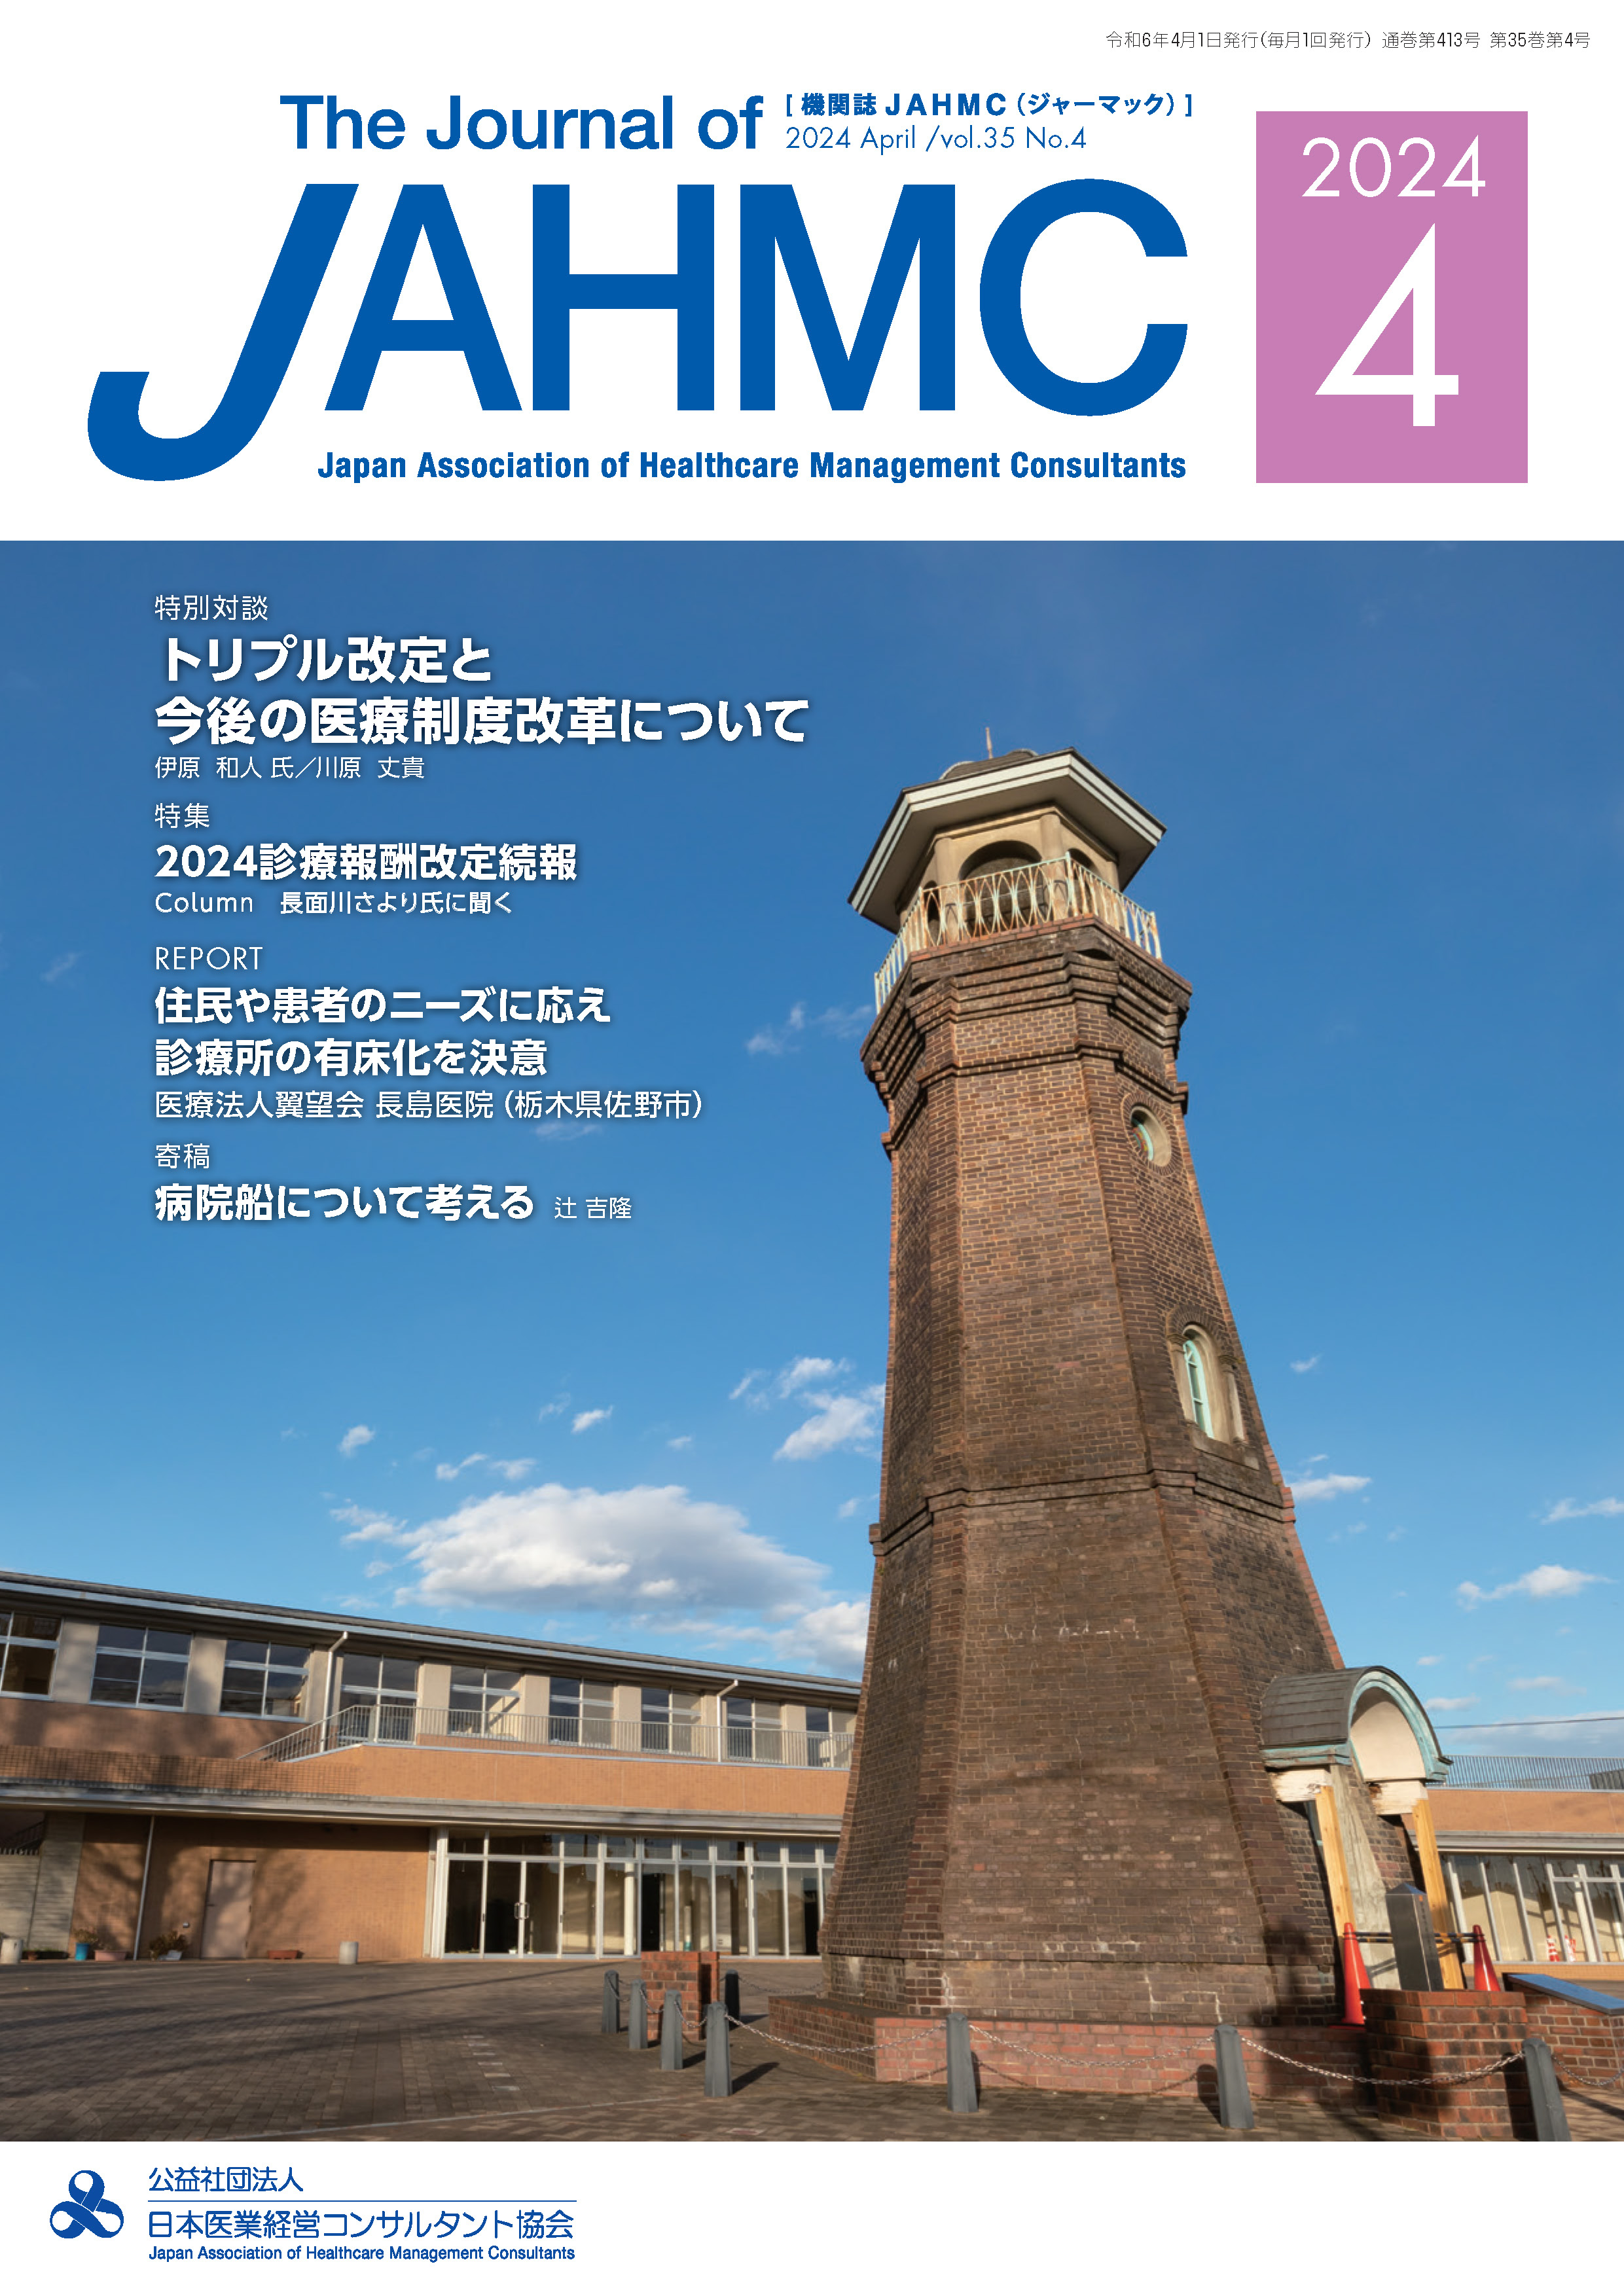 機関誌JAHMC 表紙